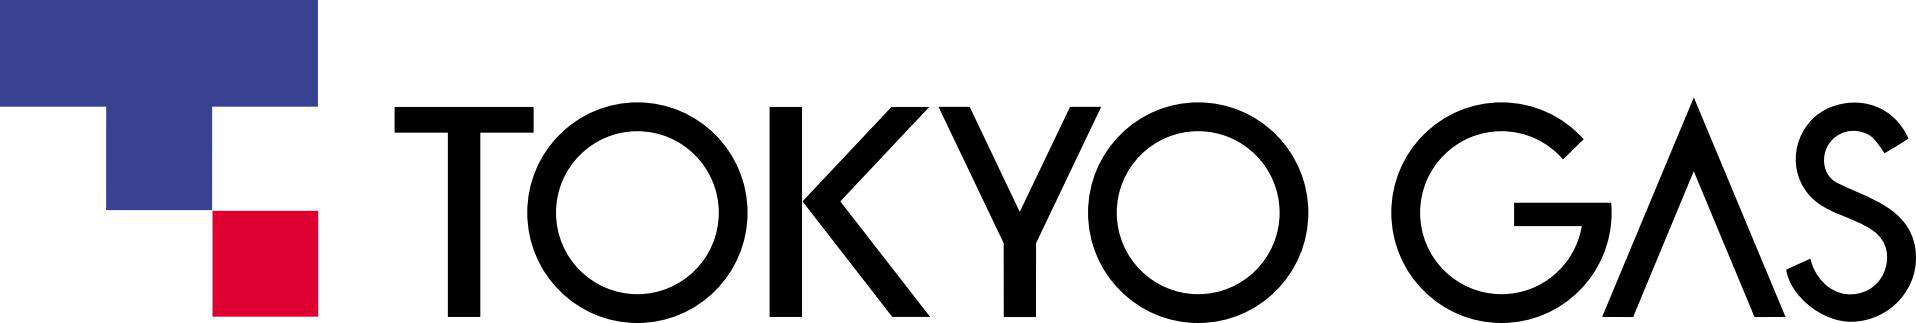 tokyo gas logo